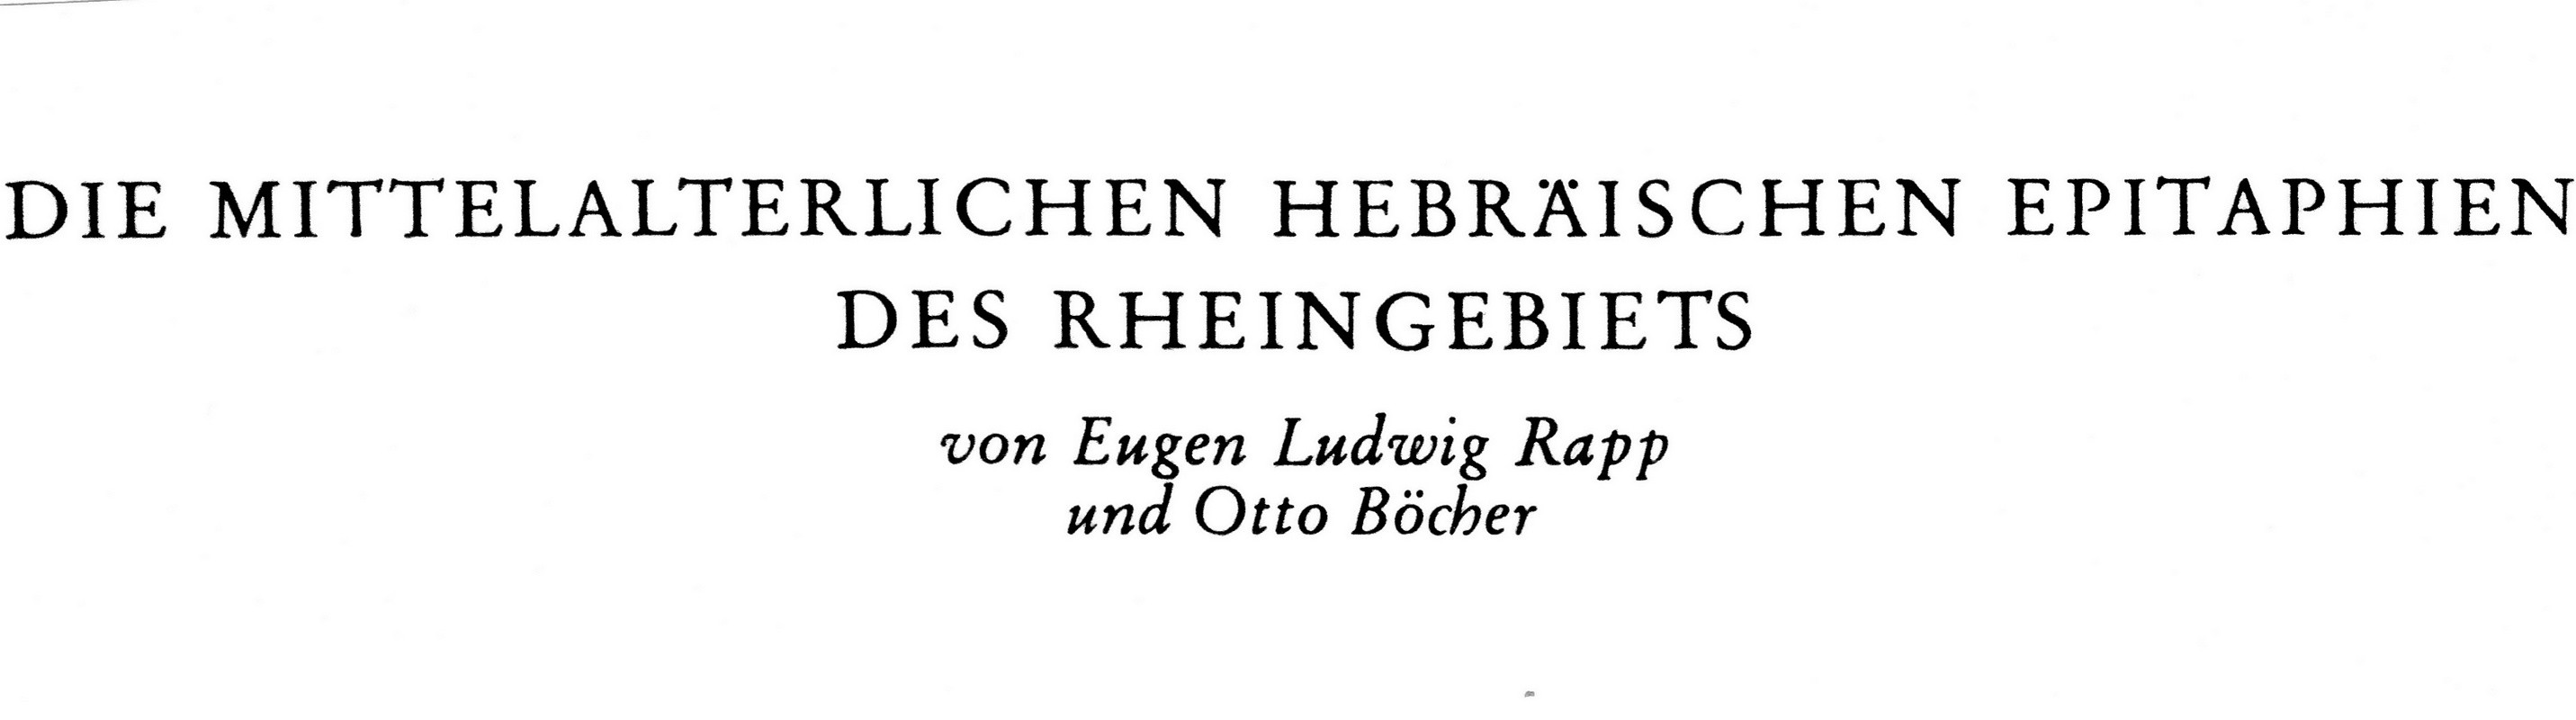 Die Mittelalterlichen Hebräischen Epitaphien des Rheingebiets (Kulturverein Guntersblum CC BY-NC-SA)